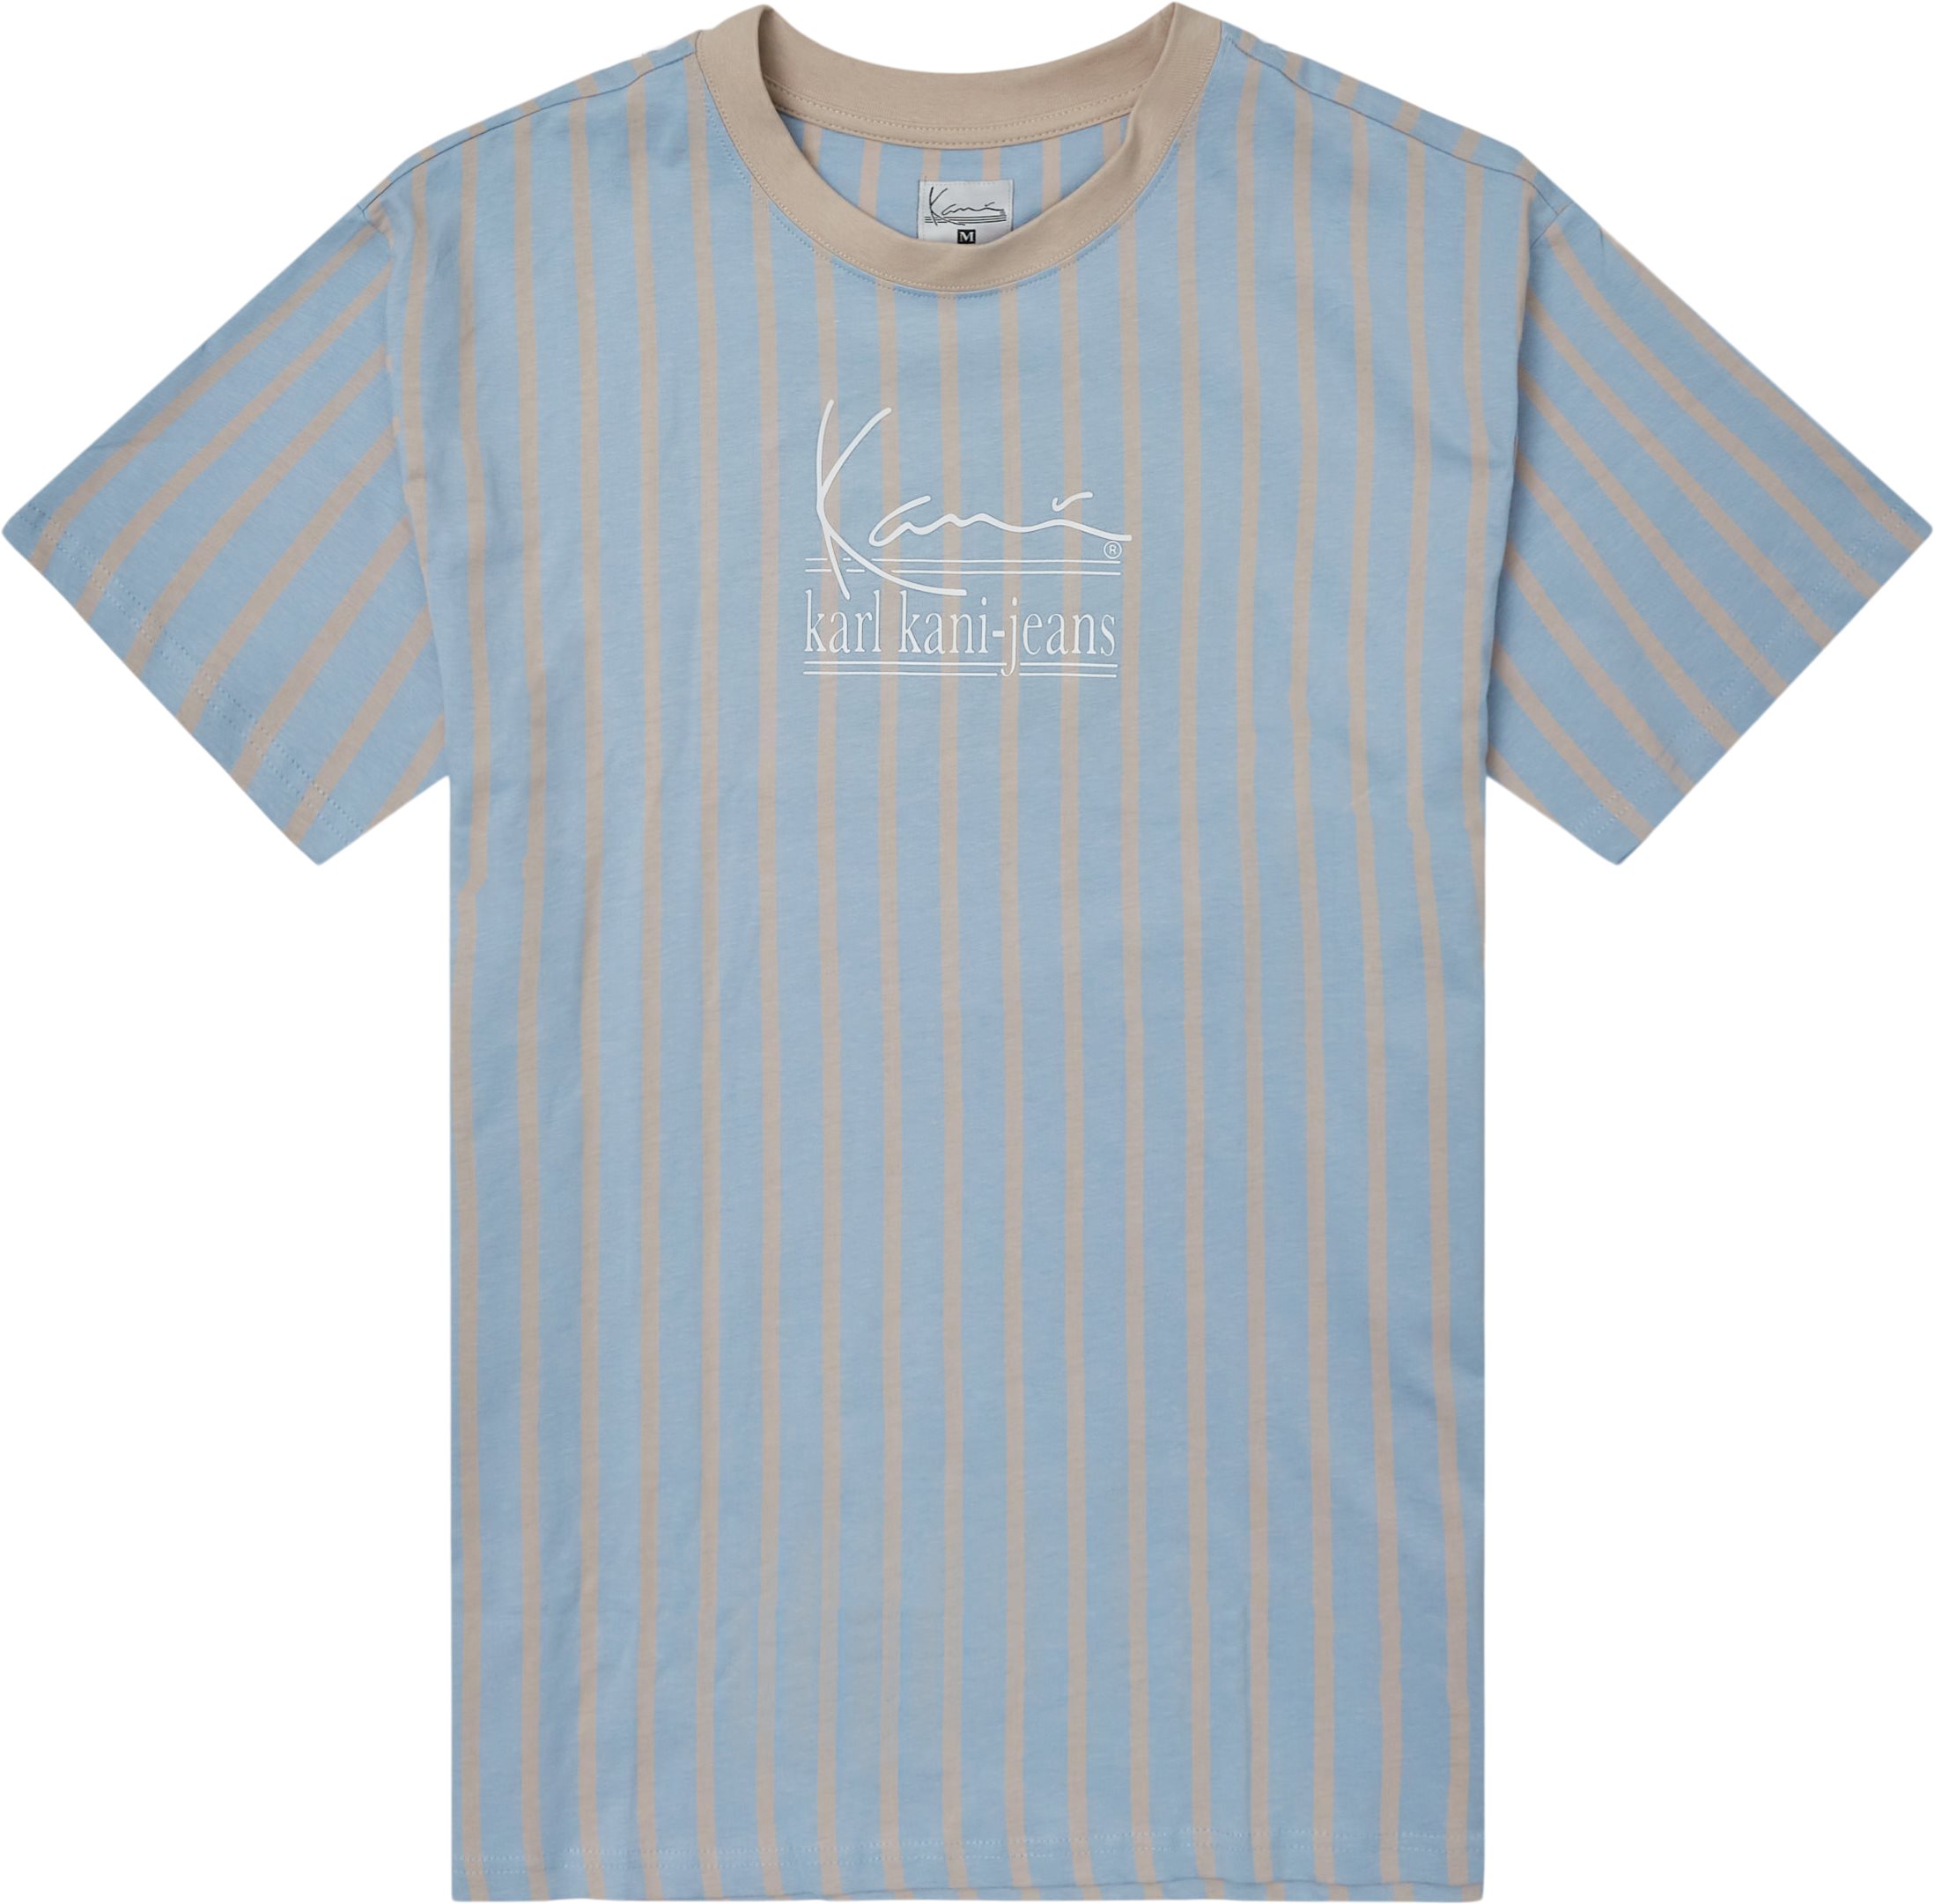 Signature Kkj Pinstripe Tee - T-shirts - Regular fit - Blue